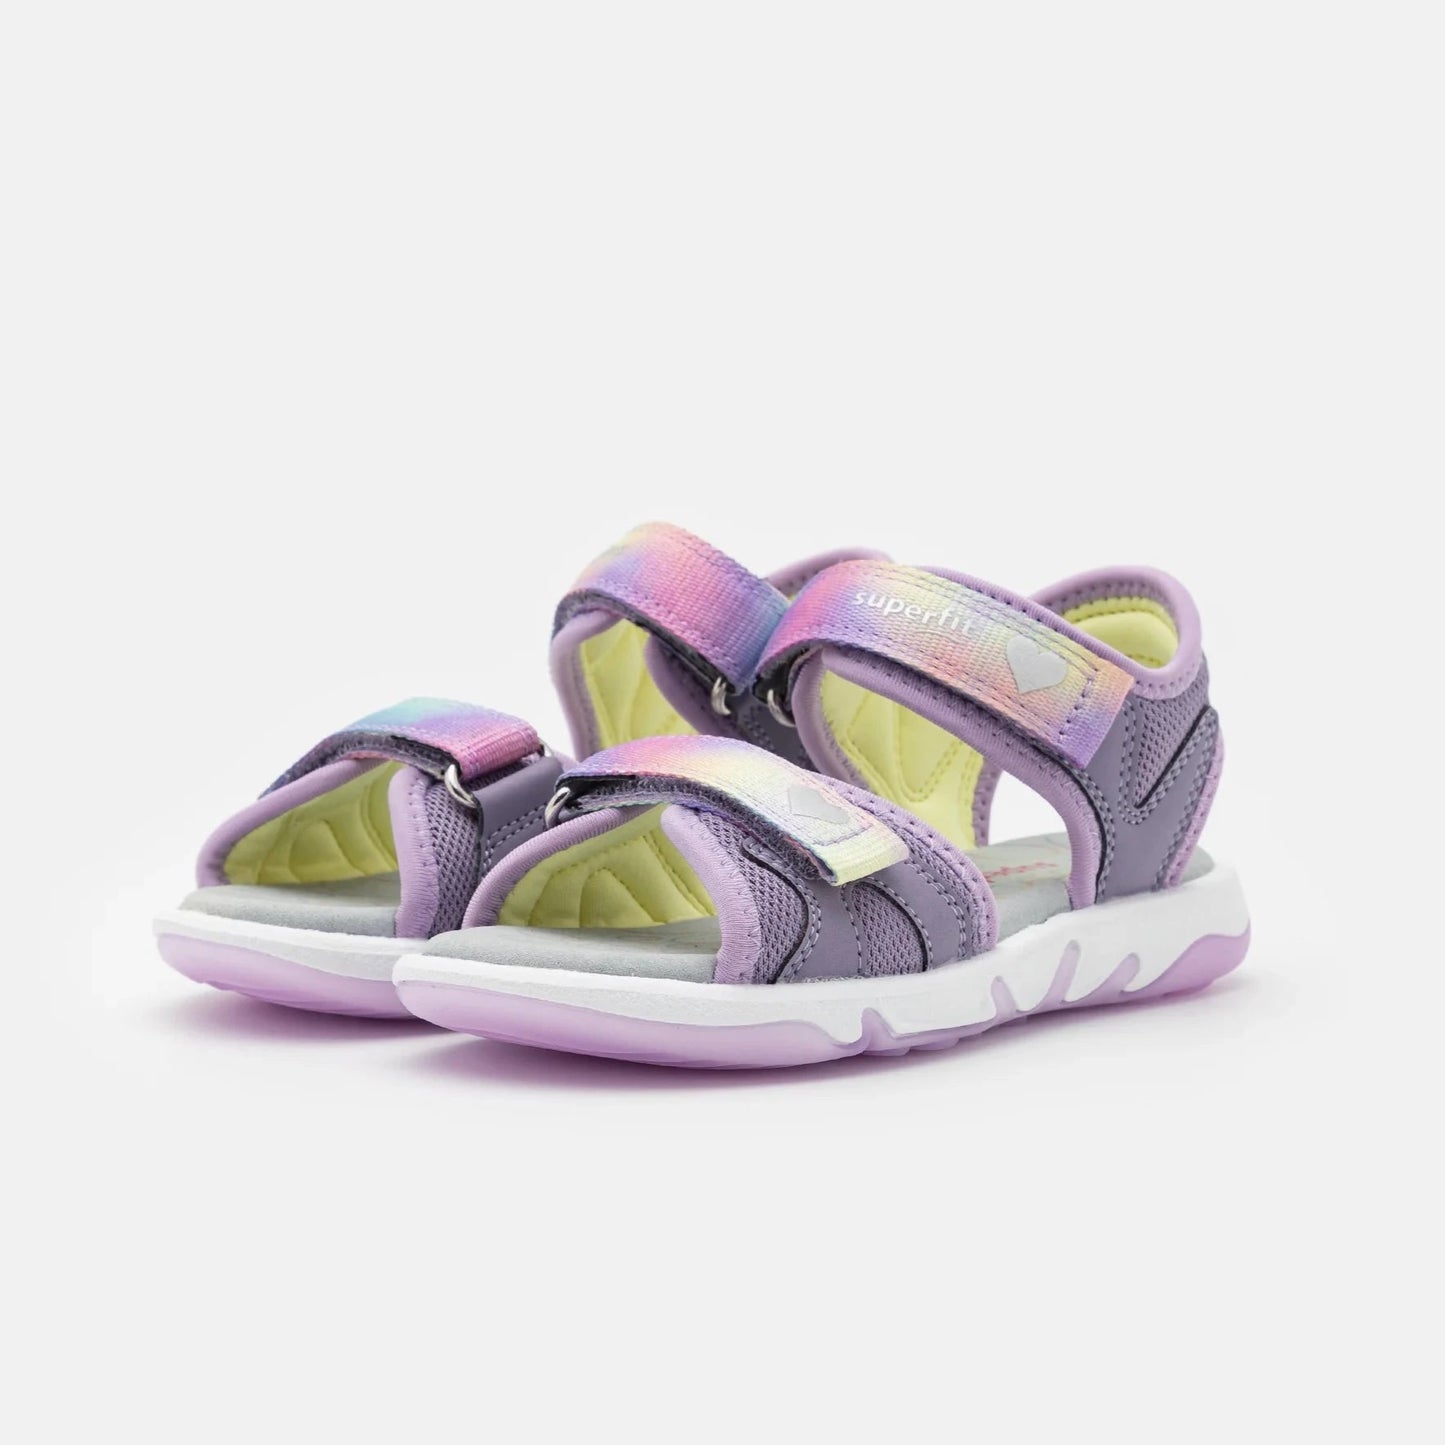 SuperFit sandal pebbles lilac rainbow